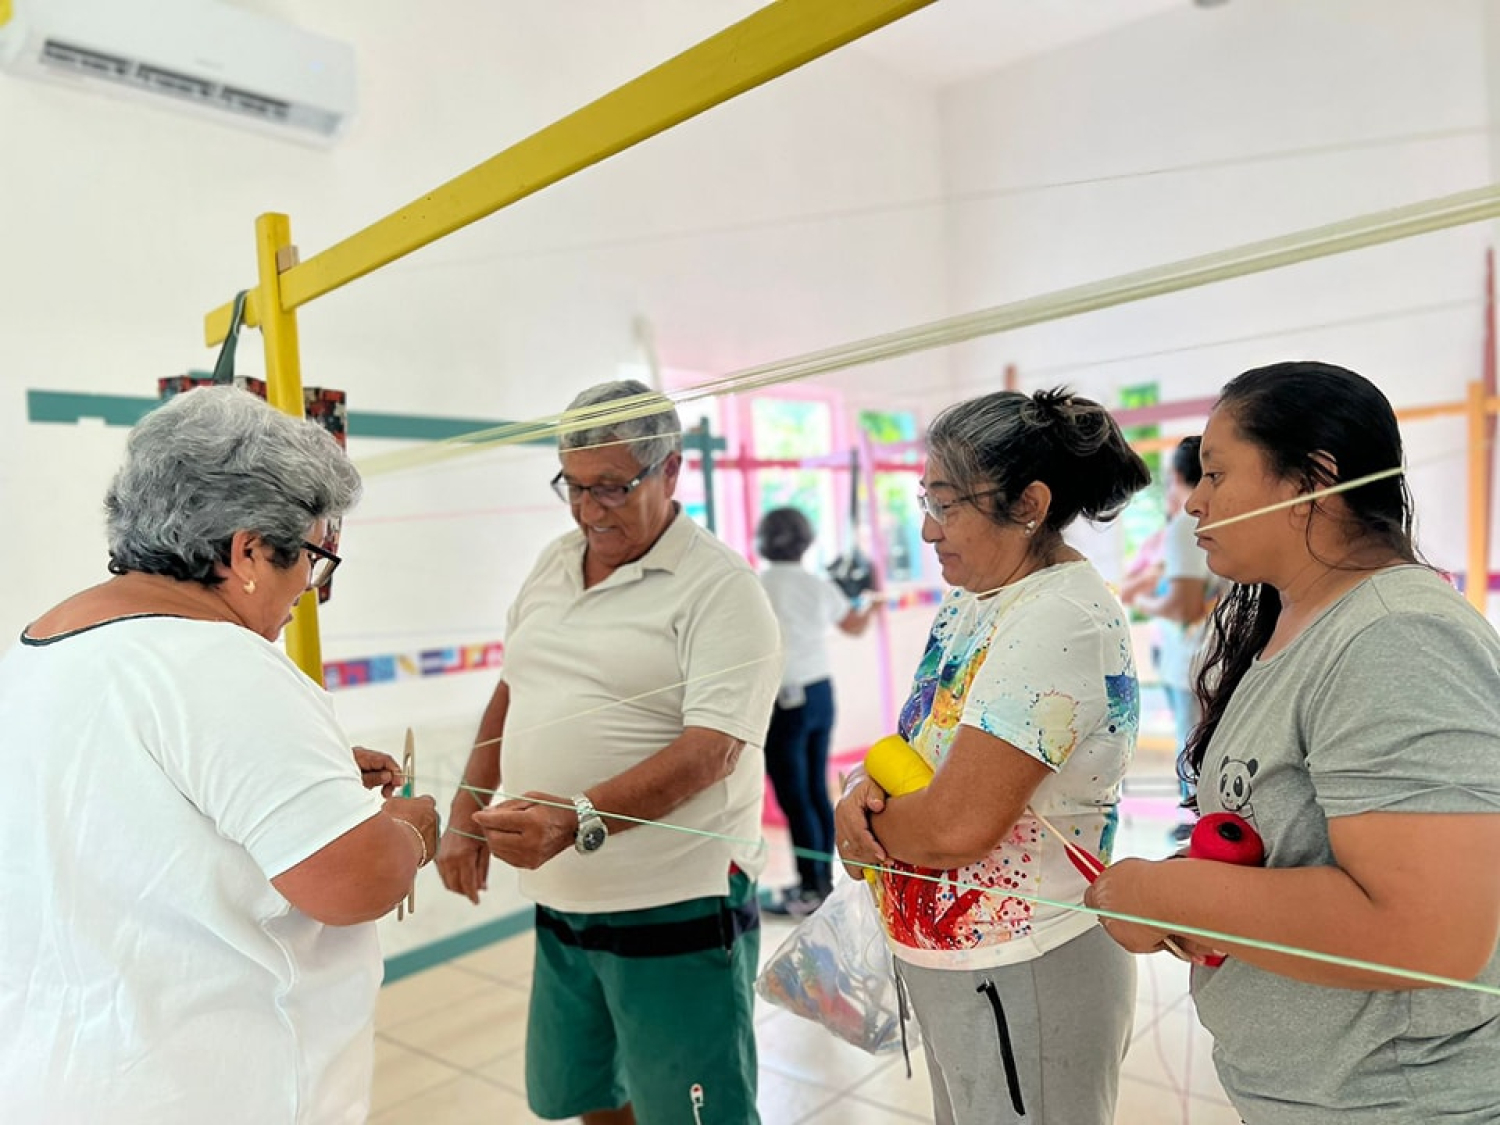 Gobierno de Isla Mujeres invita a participar en el taller de urdido de hamacas